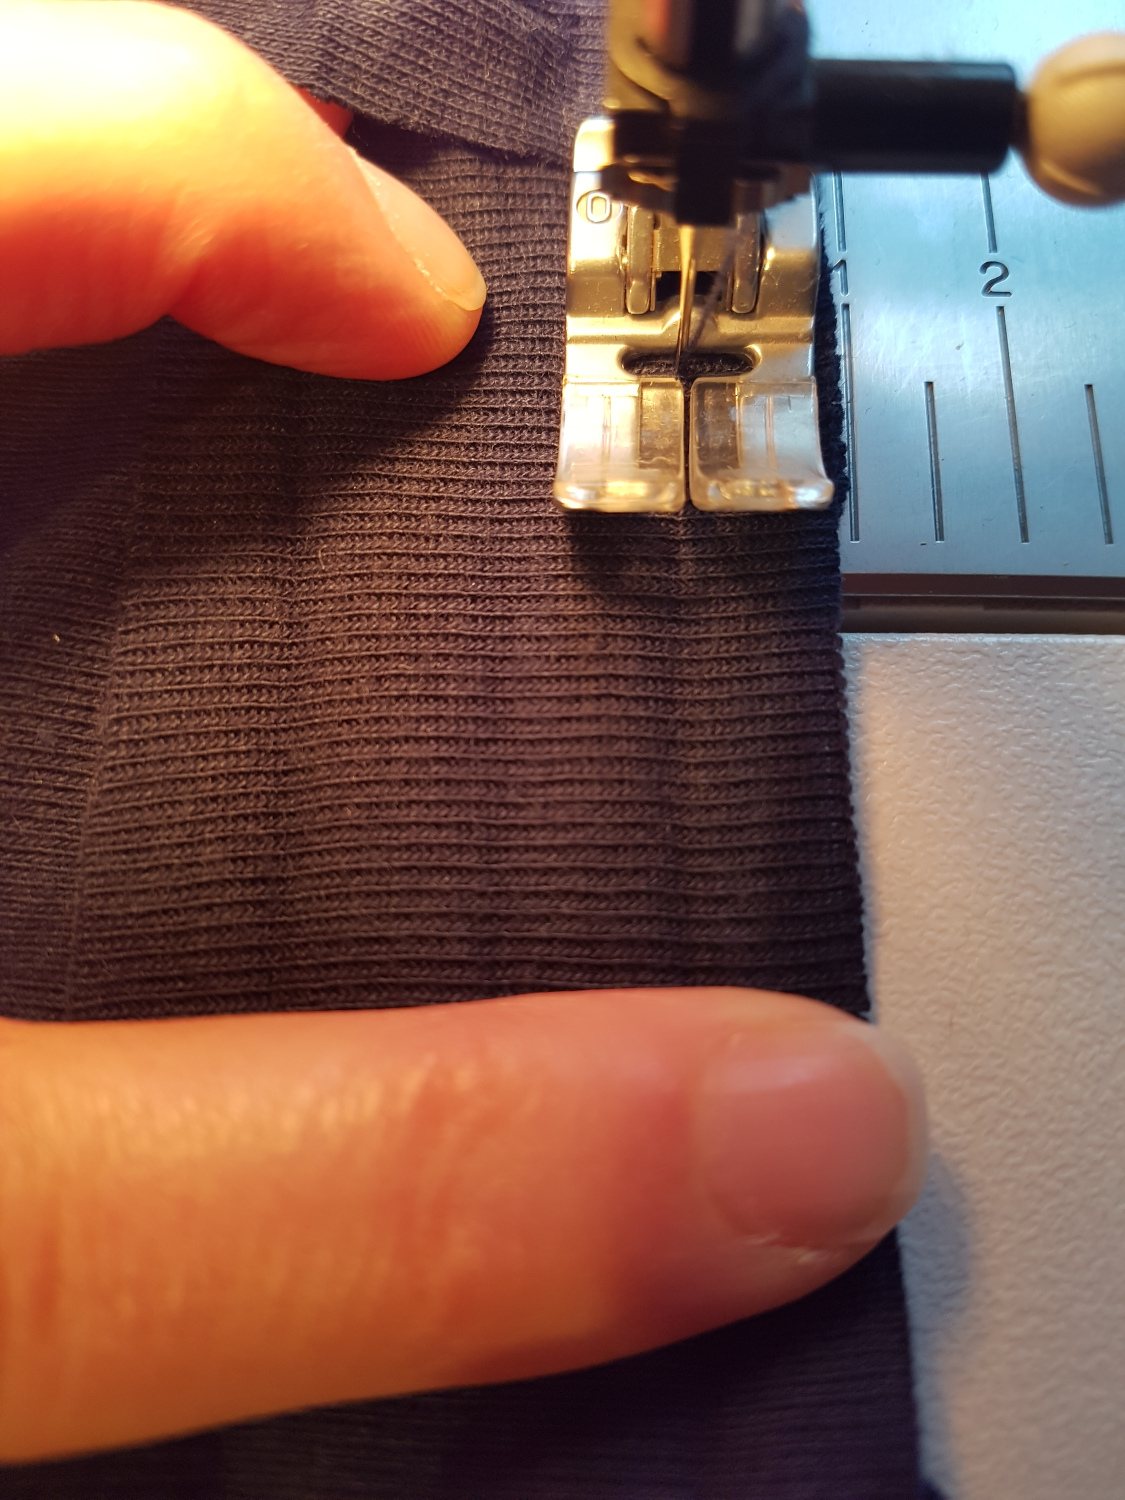 Der Streifen liegt auf dem Halsausschnitt unter der Nähmaschine. Die Nadel sticht im gebügelten Falz ein.